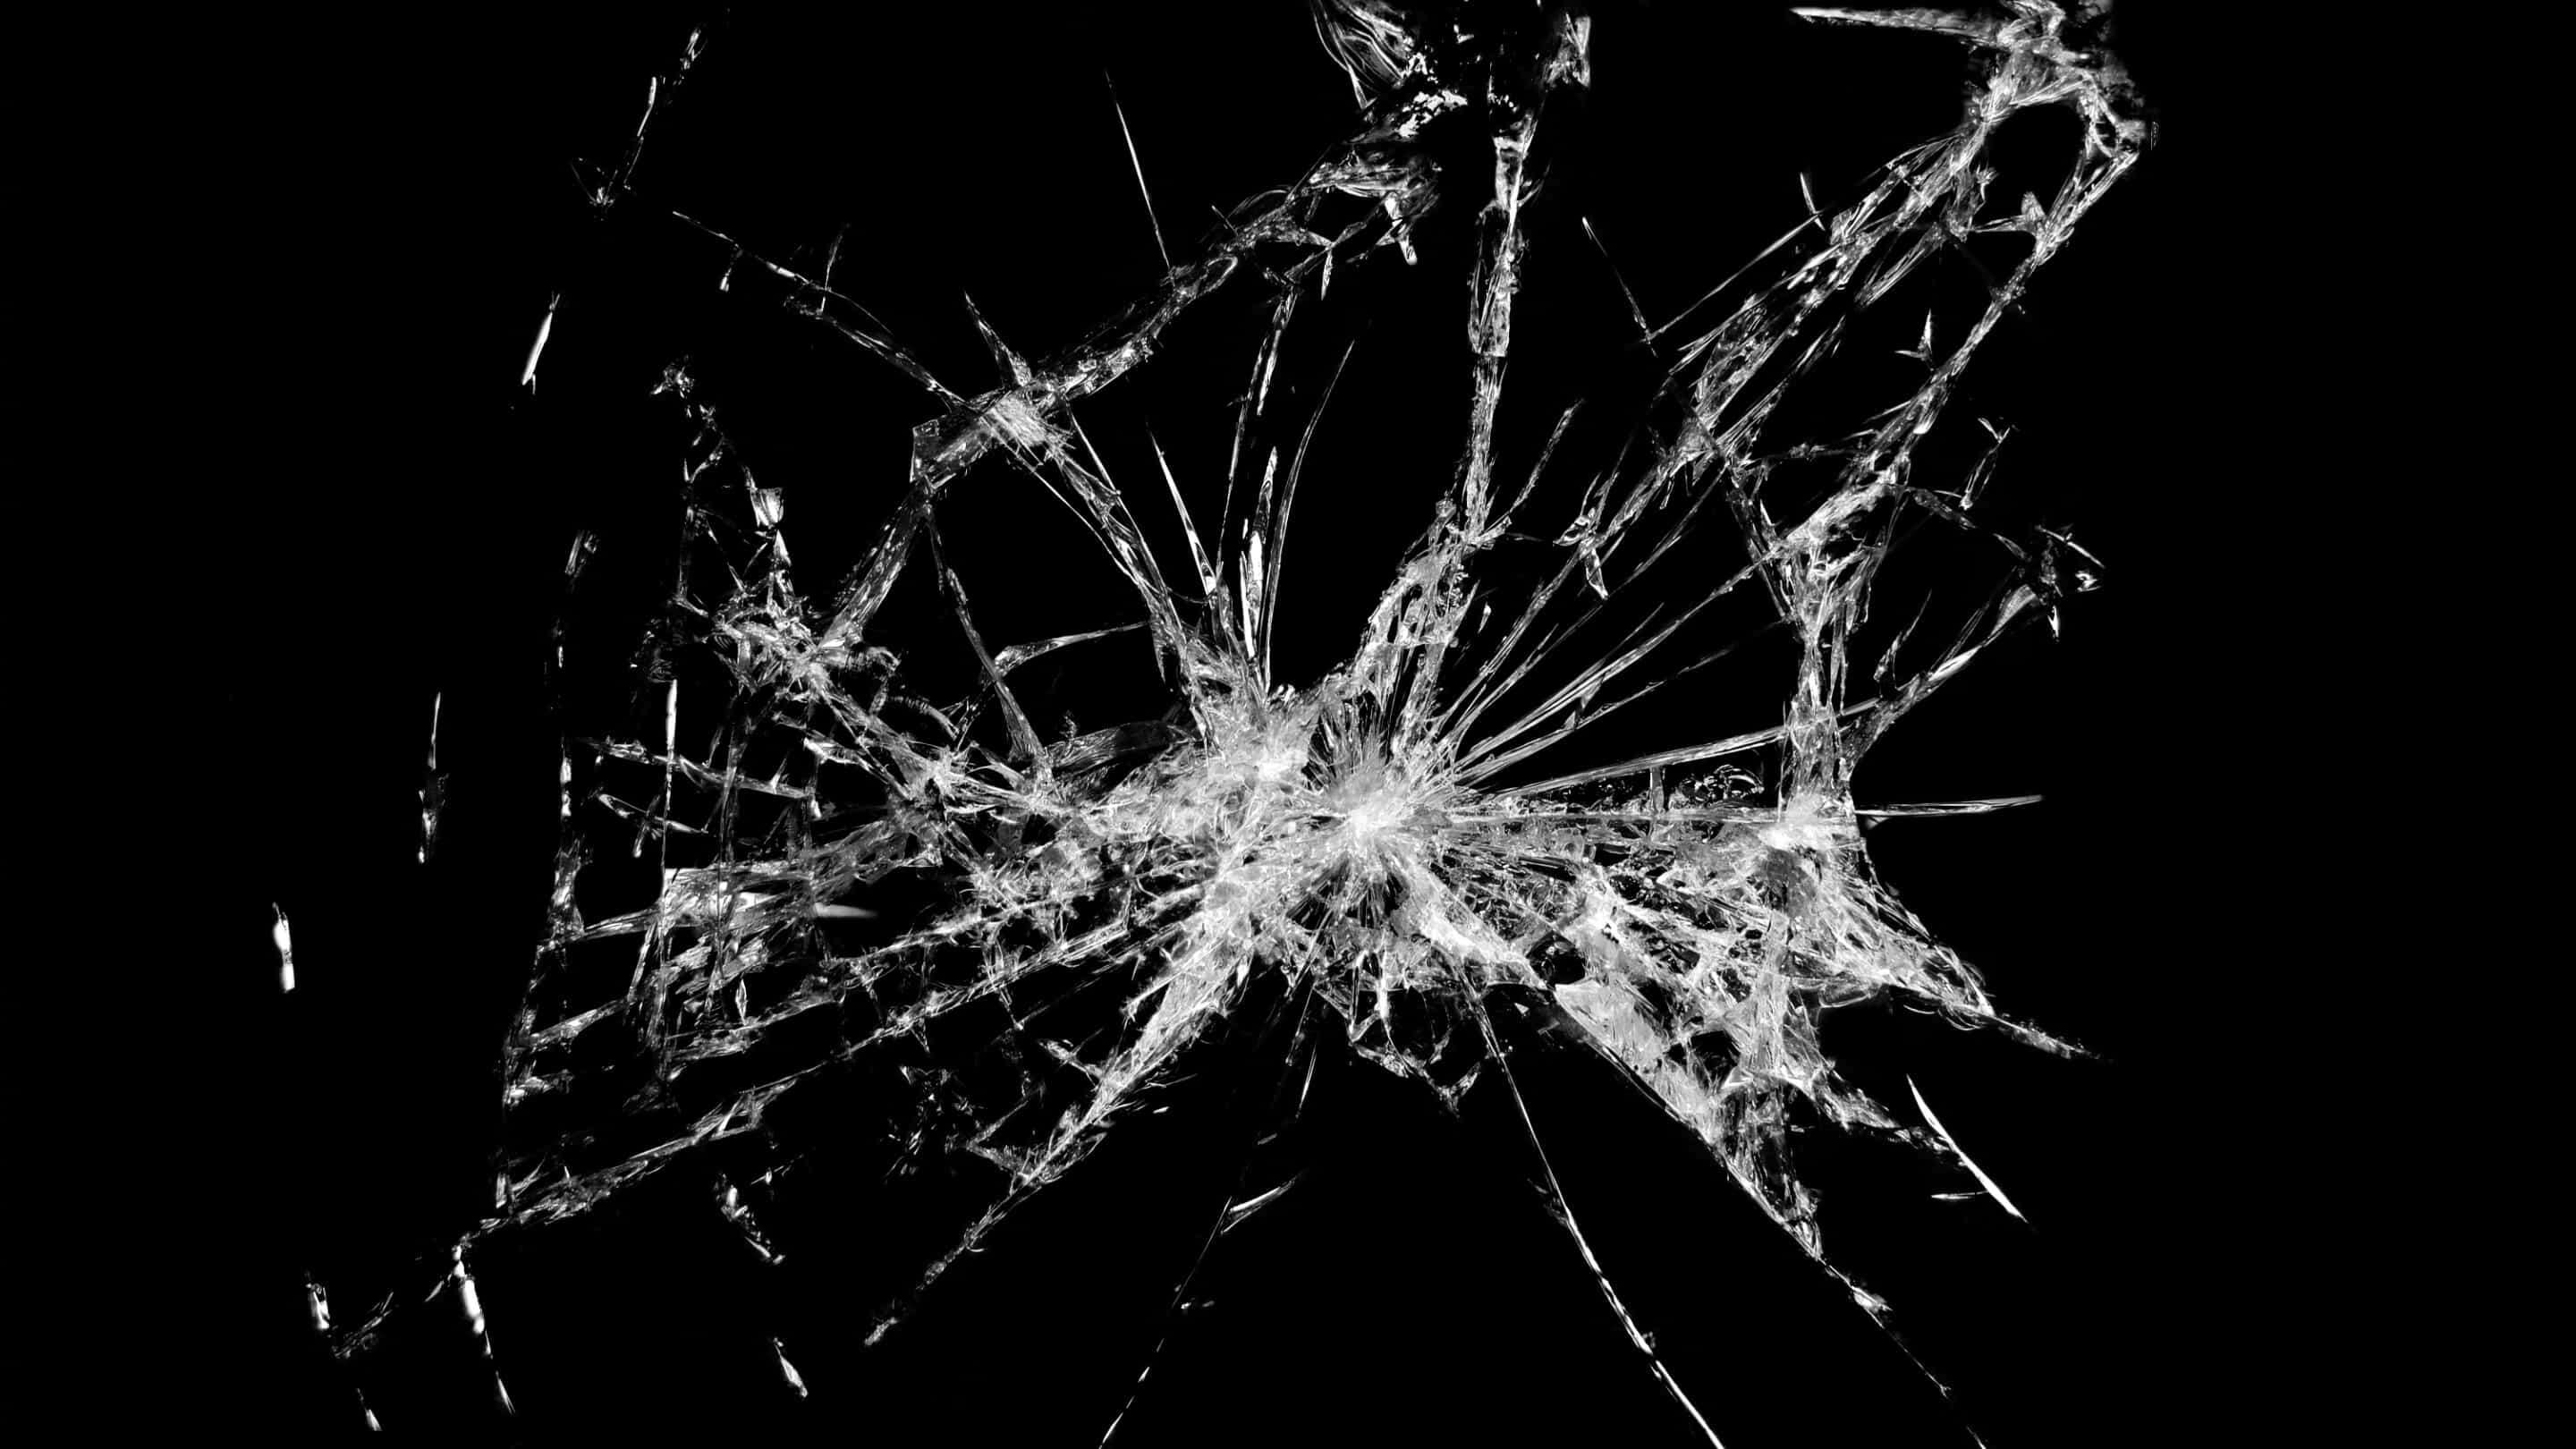 ガラス耐衝撃性-ノーメンガラス耐衝撃性多くの亀裂のある割れたガラス